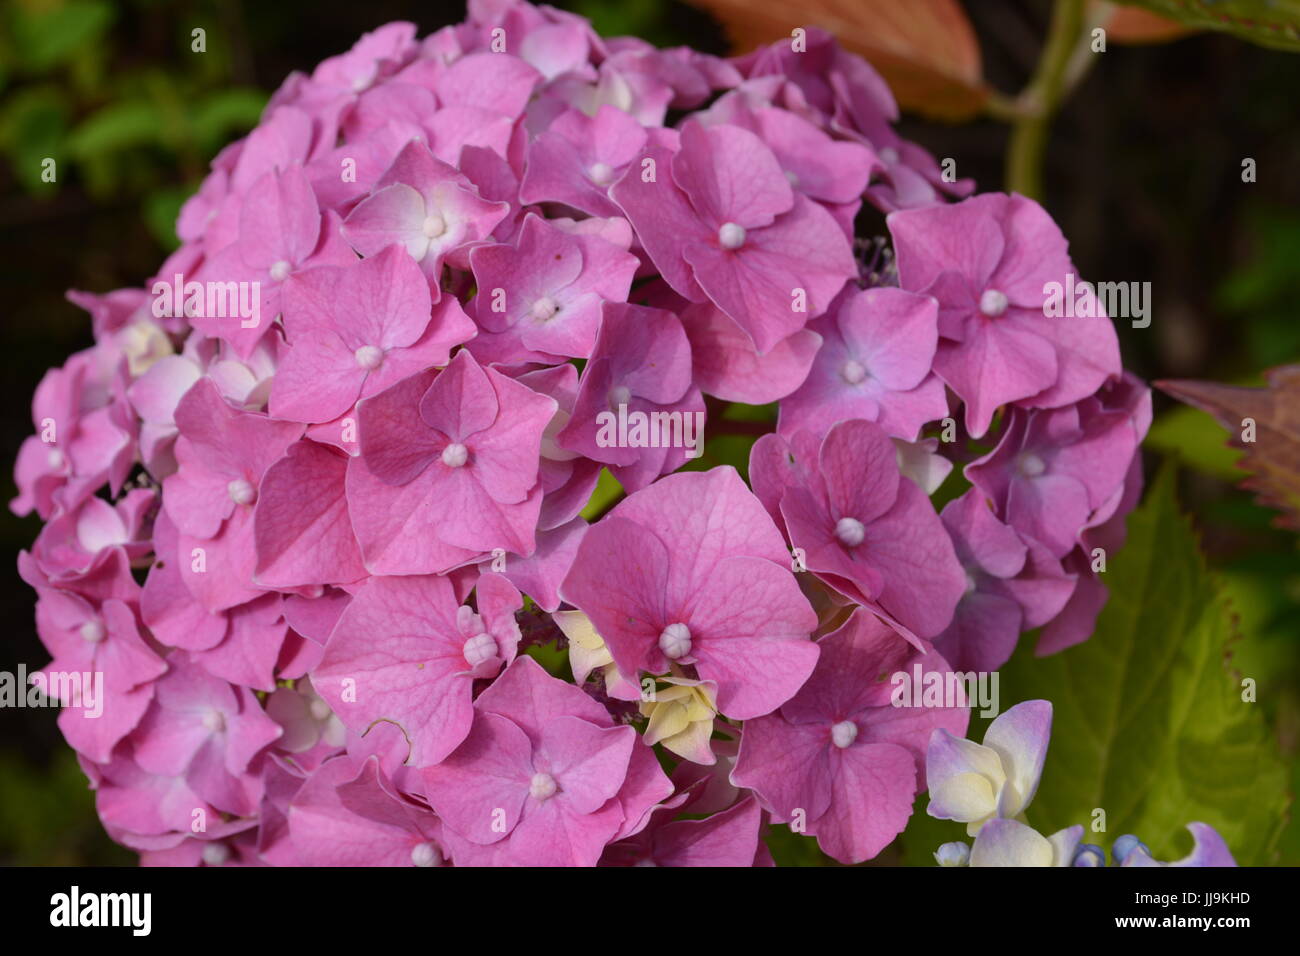 Nahaufnahme eines blühenden Hortensie Pflanze in einem englischen Garten Stockfoto